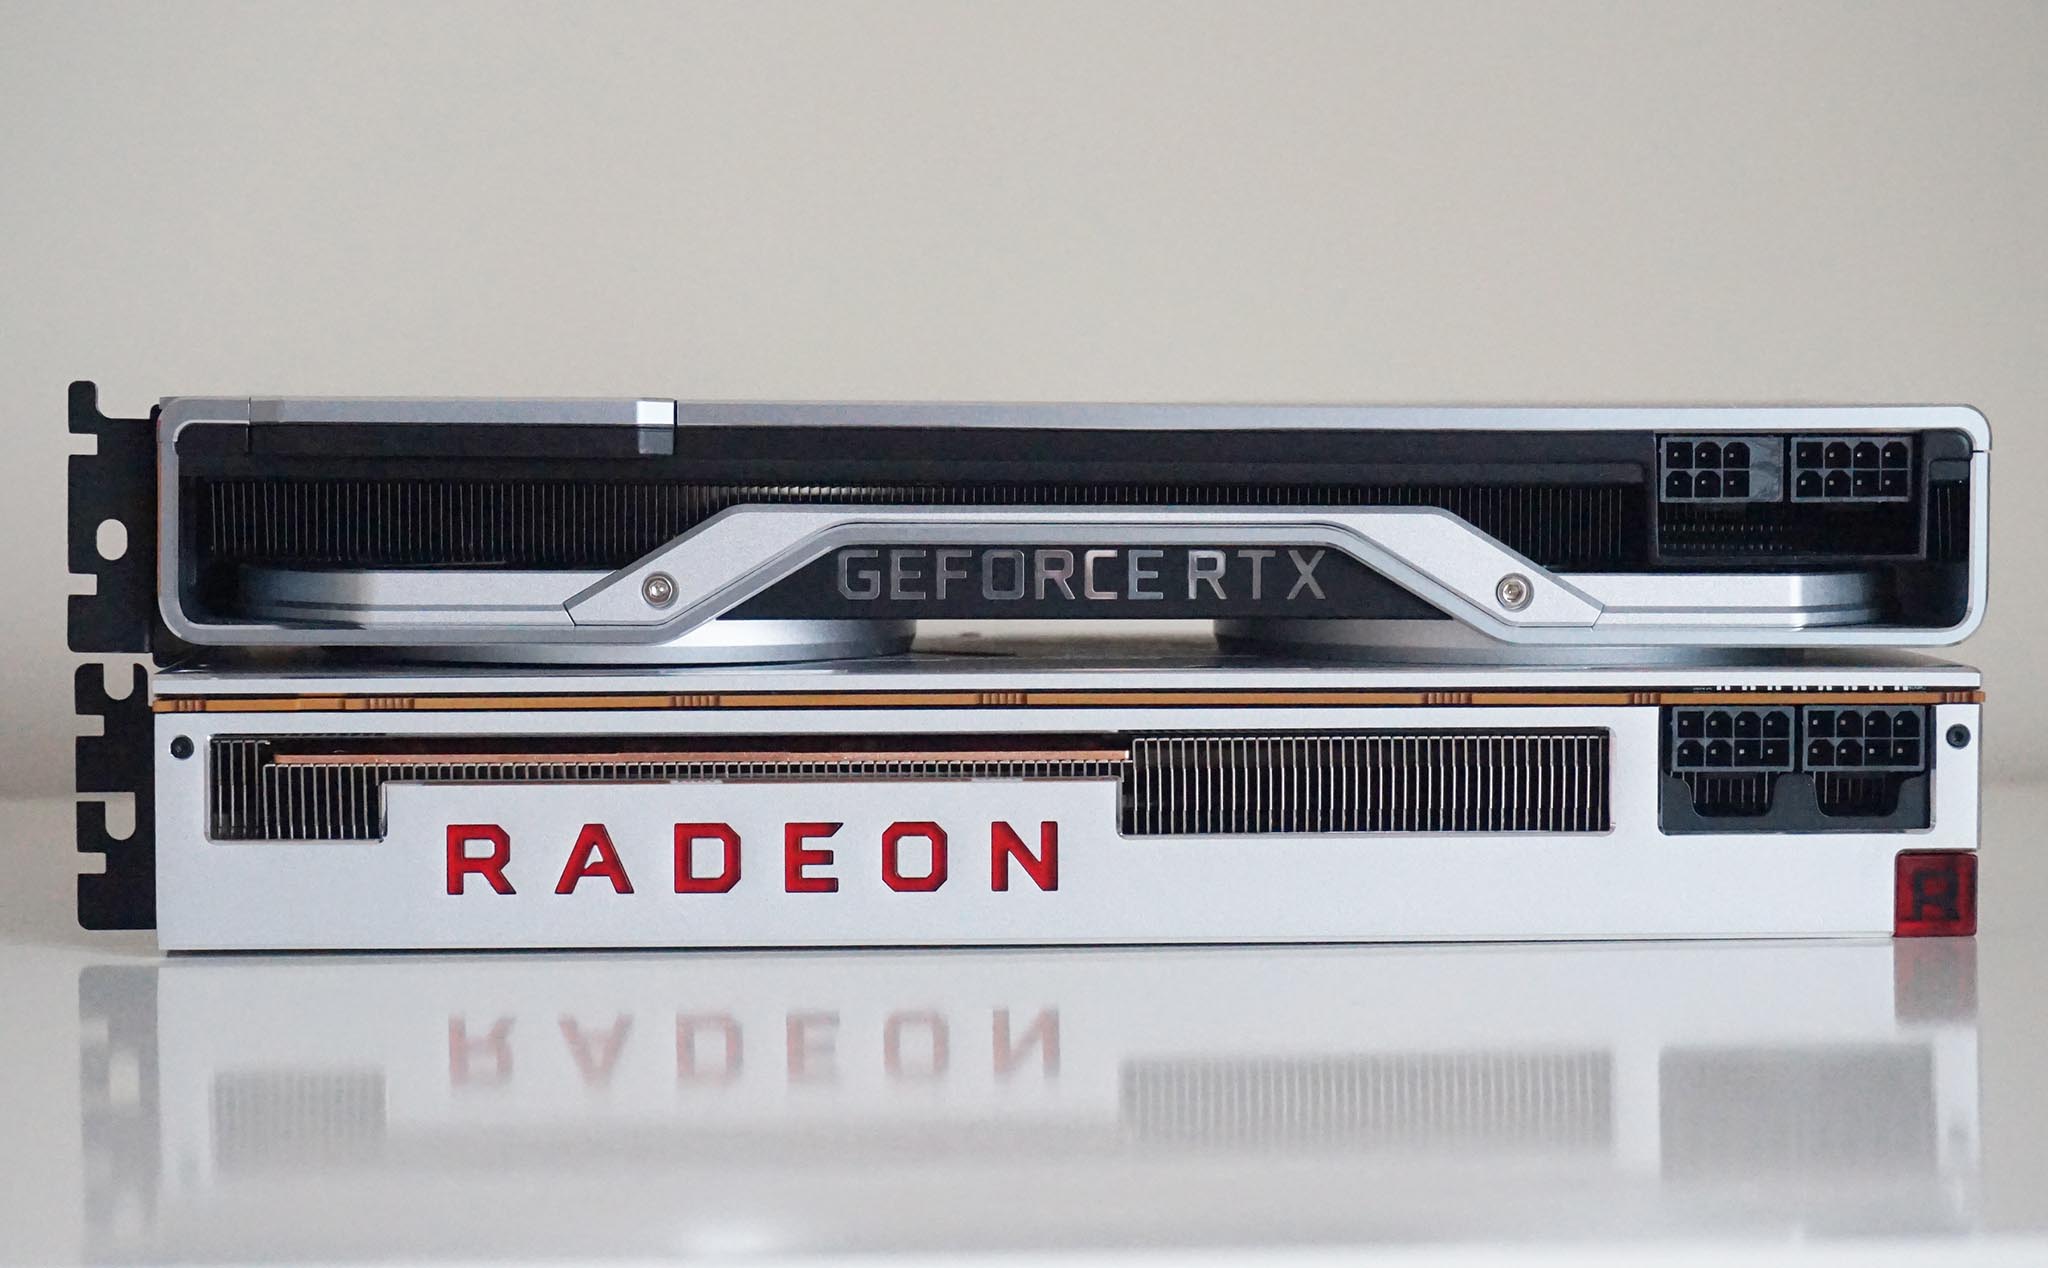 RTX 20 series và Radeon VII - 2 dòng card đồ hoạ "nhàm chán" nhất năm nay?